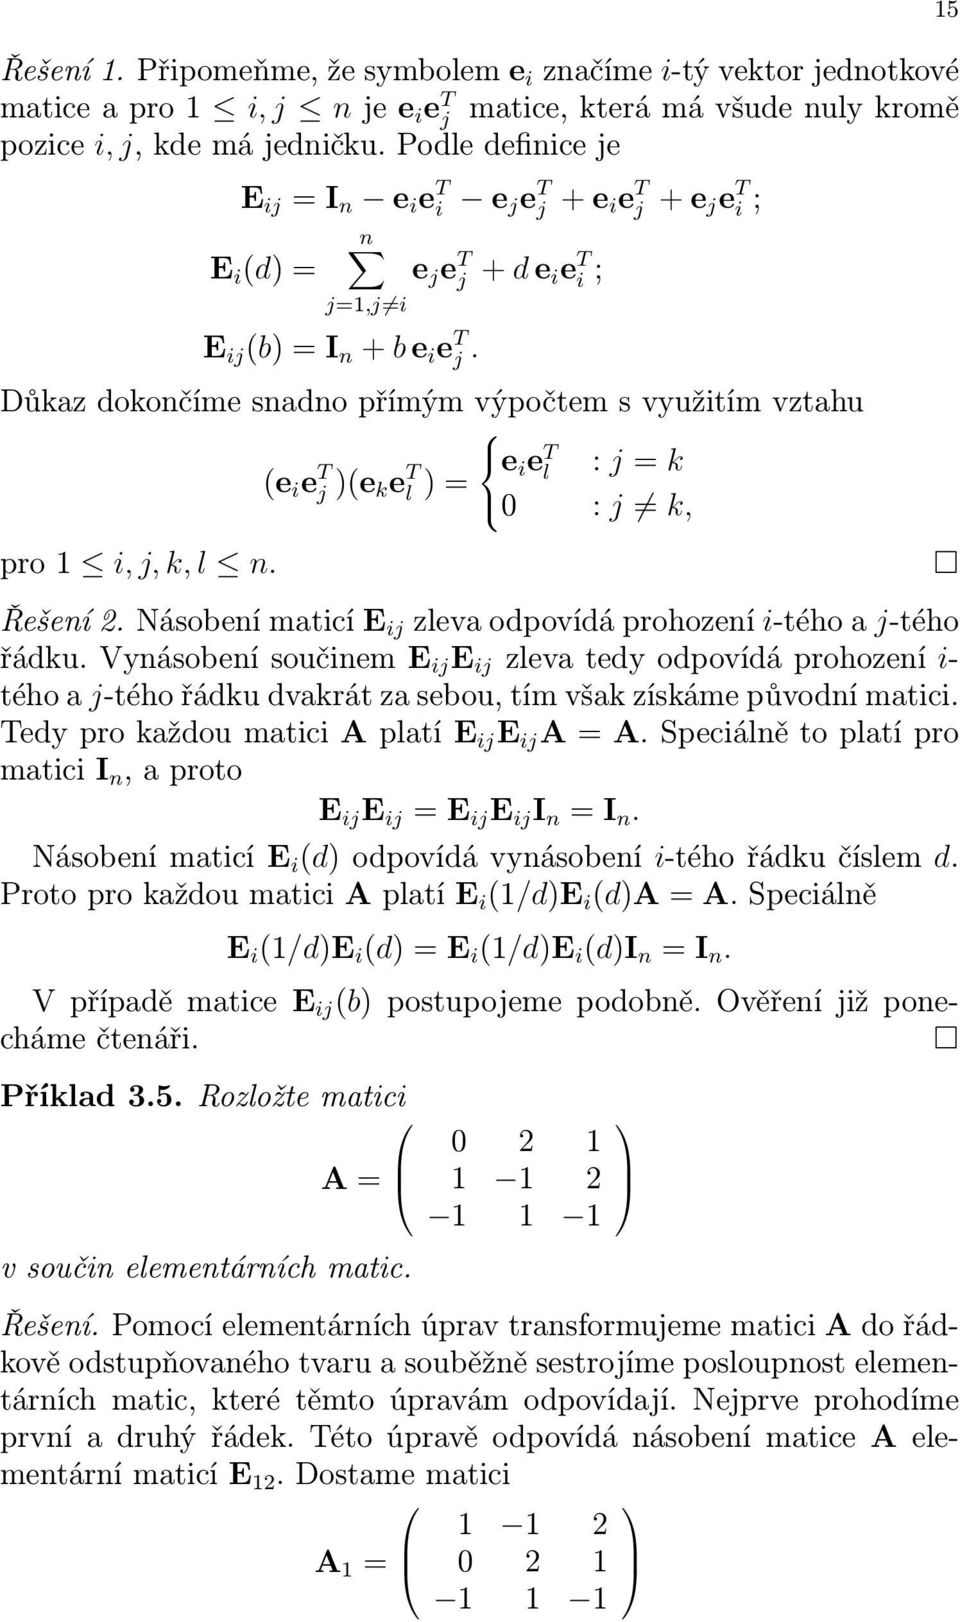 Důkaz dokončíme snadno přímým výpočtem s využitím vztahu (e i e T j)(e k e T e i e T l : j= k l)= 0 : j k, pro i,j,k,l n. Řešení.NásobenímaticíE ij zlevaodpovídáprohození i-téhoaj-tého řádku.